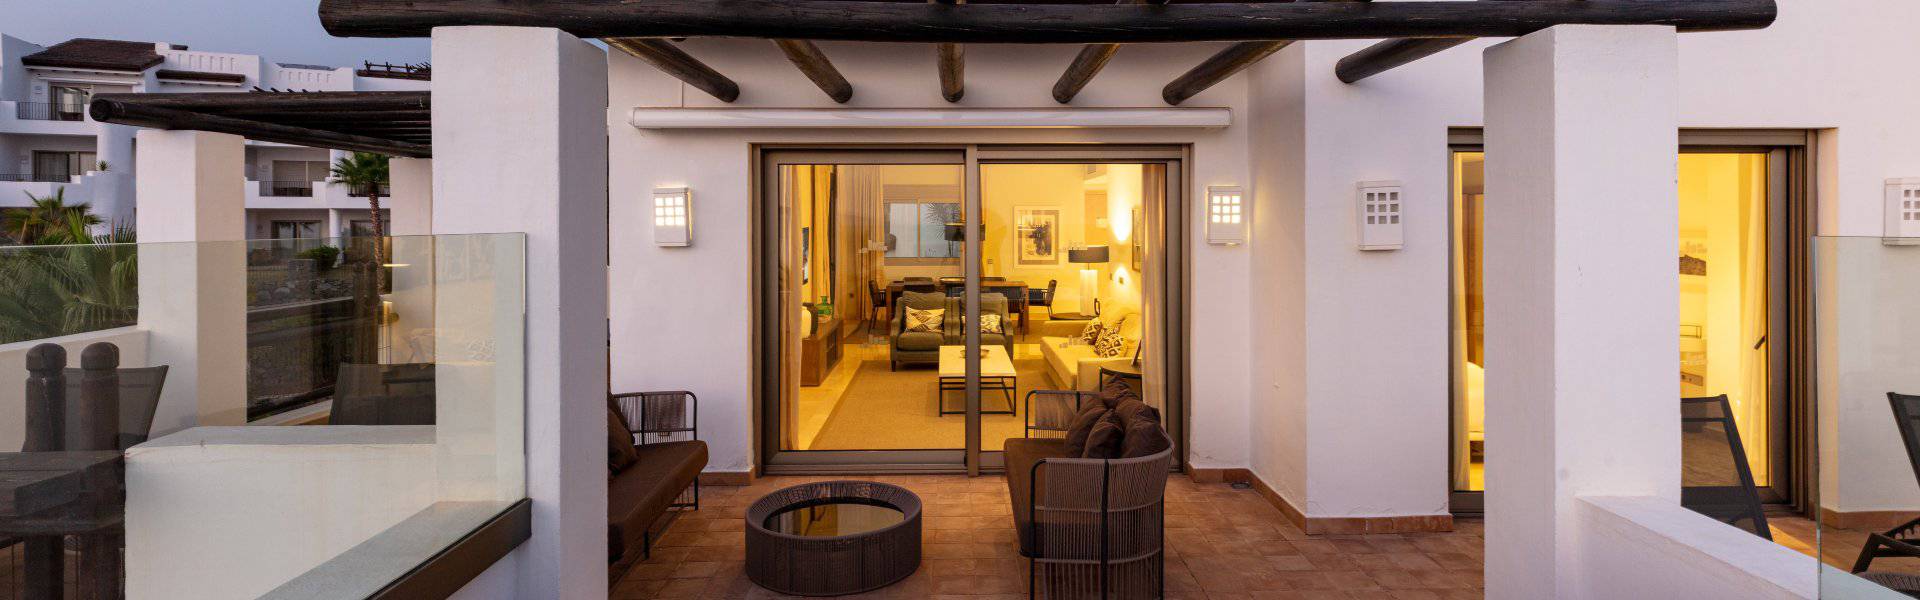 Hotel las terrazas de abama suites 5* Las Terrazas de Abama Suites Hotel Tenerife